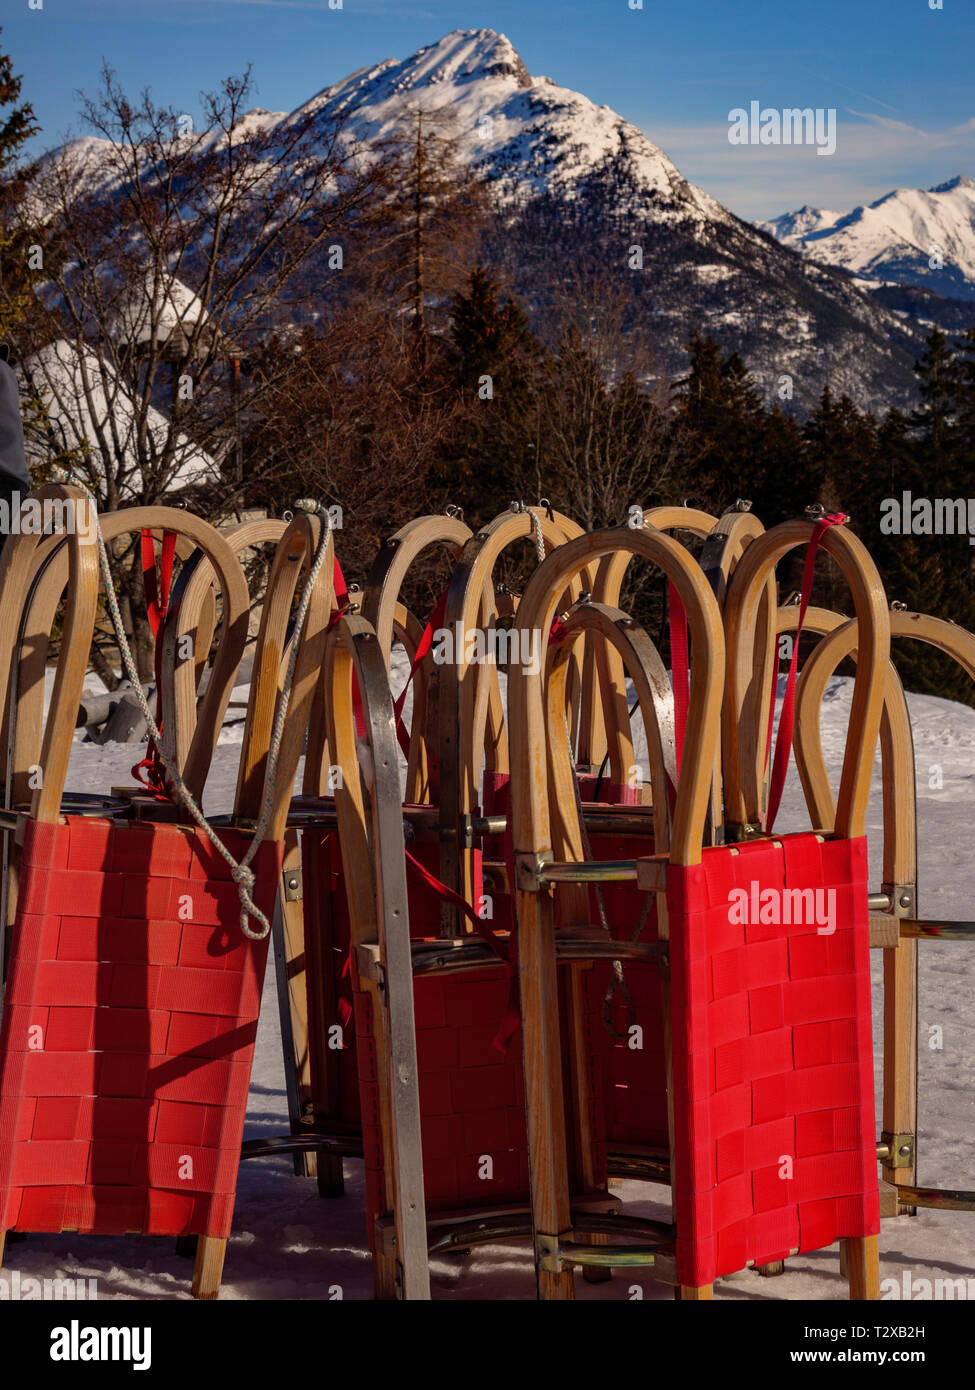 Sports d'hiver, luge, ski area Tröpolach 83, Imst, Tyrol, Autriche, Europe Banque D'Images